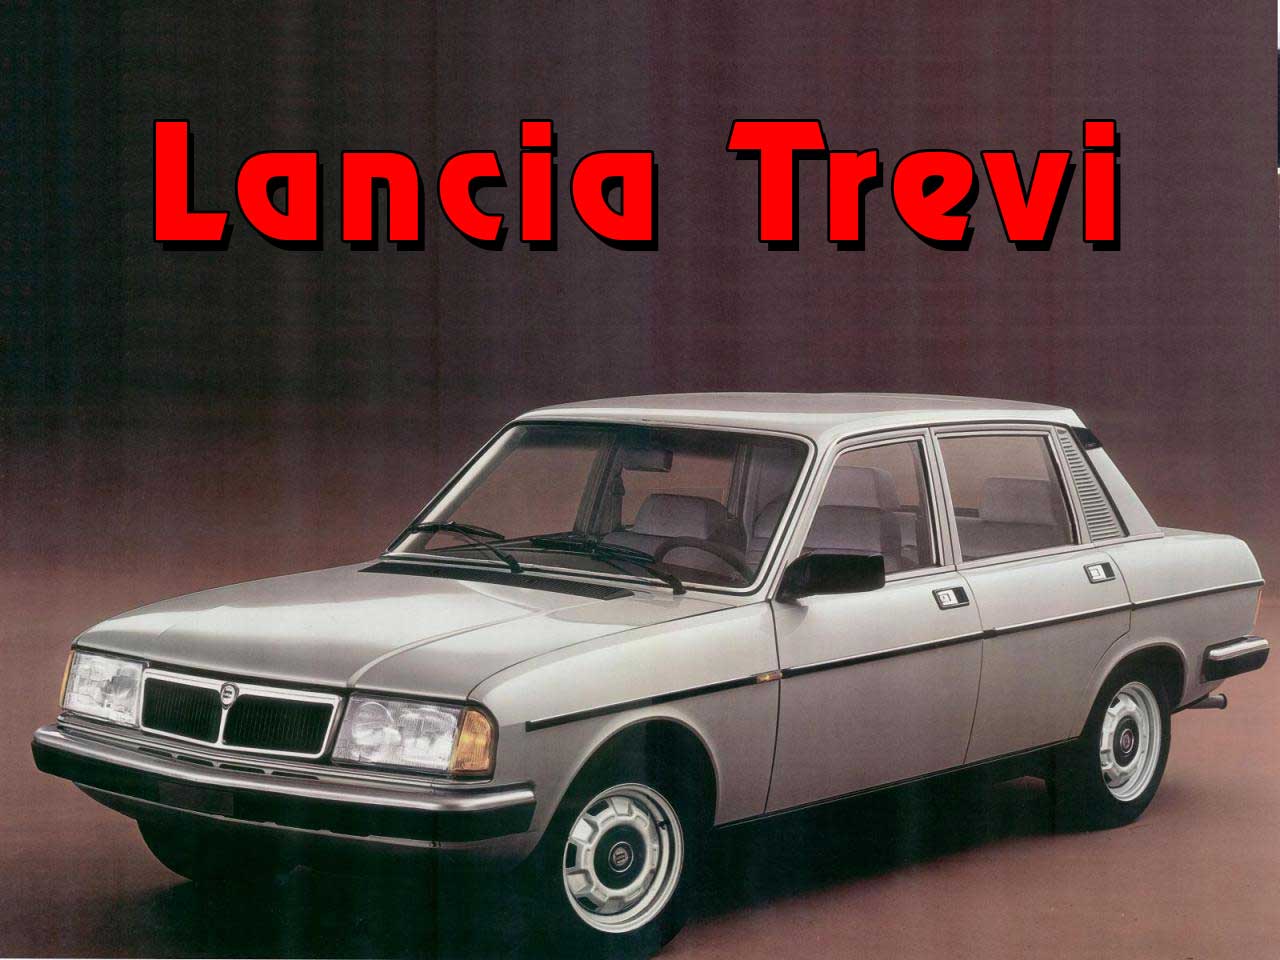 Ejtisowy kadeel italski czyli Lancia Trevi